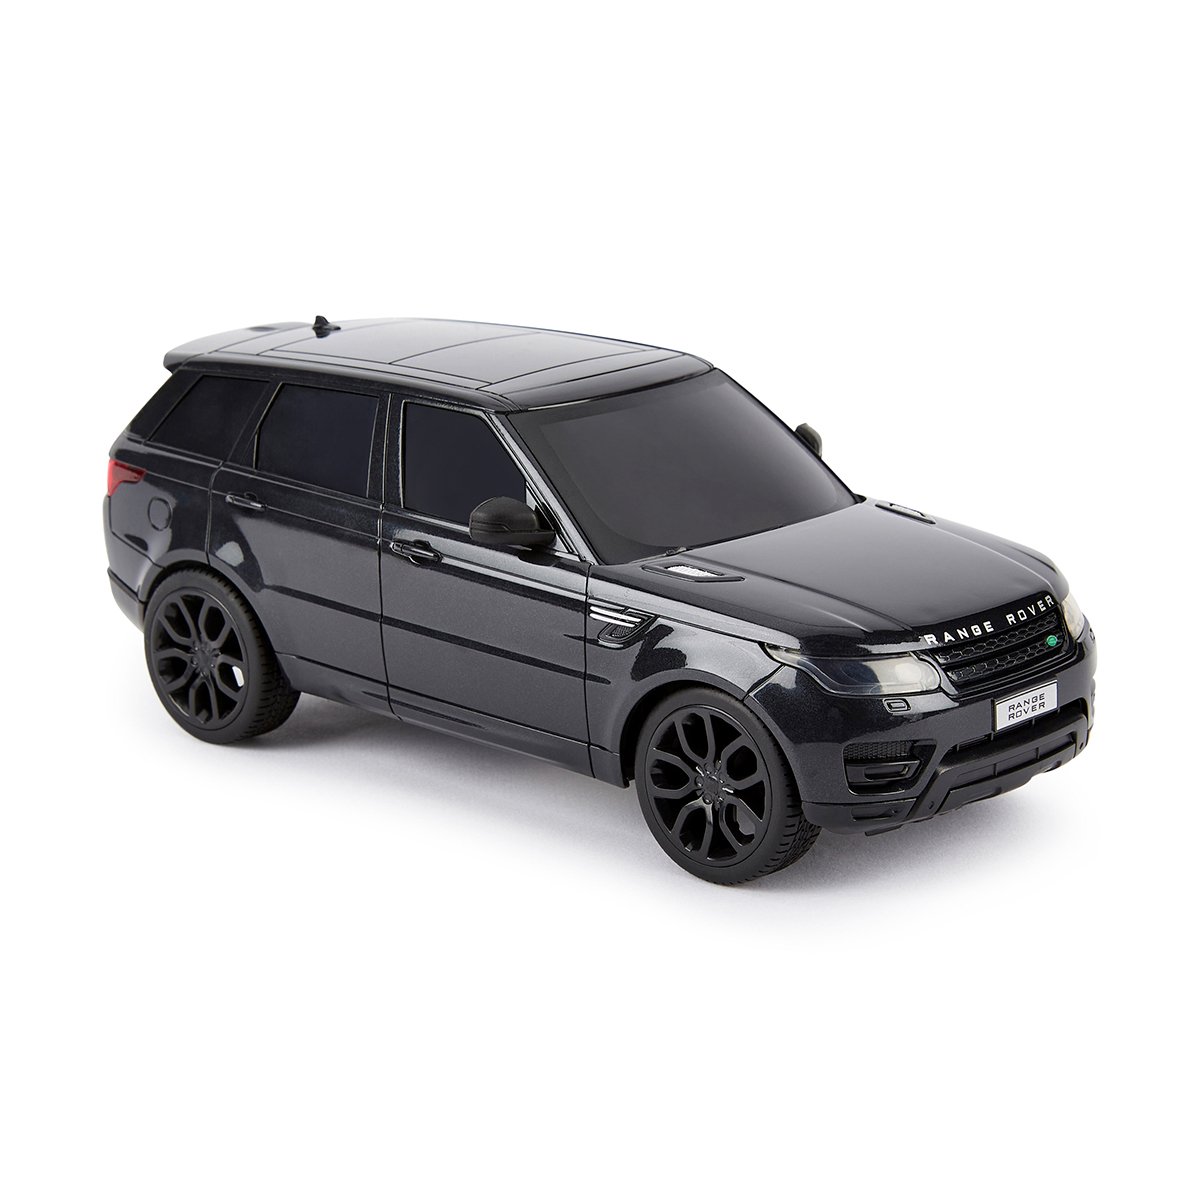 Автомобіль KS Drive на р/к Land Rover Range Rover Sport 1:24, 2.4Ghz чорний (124GRRB) - фото 4